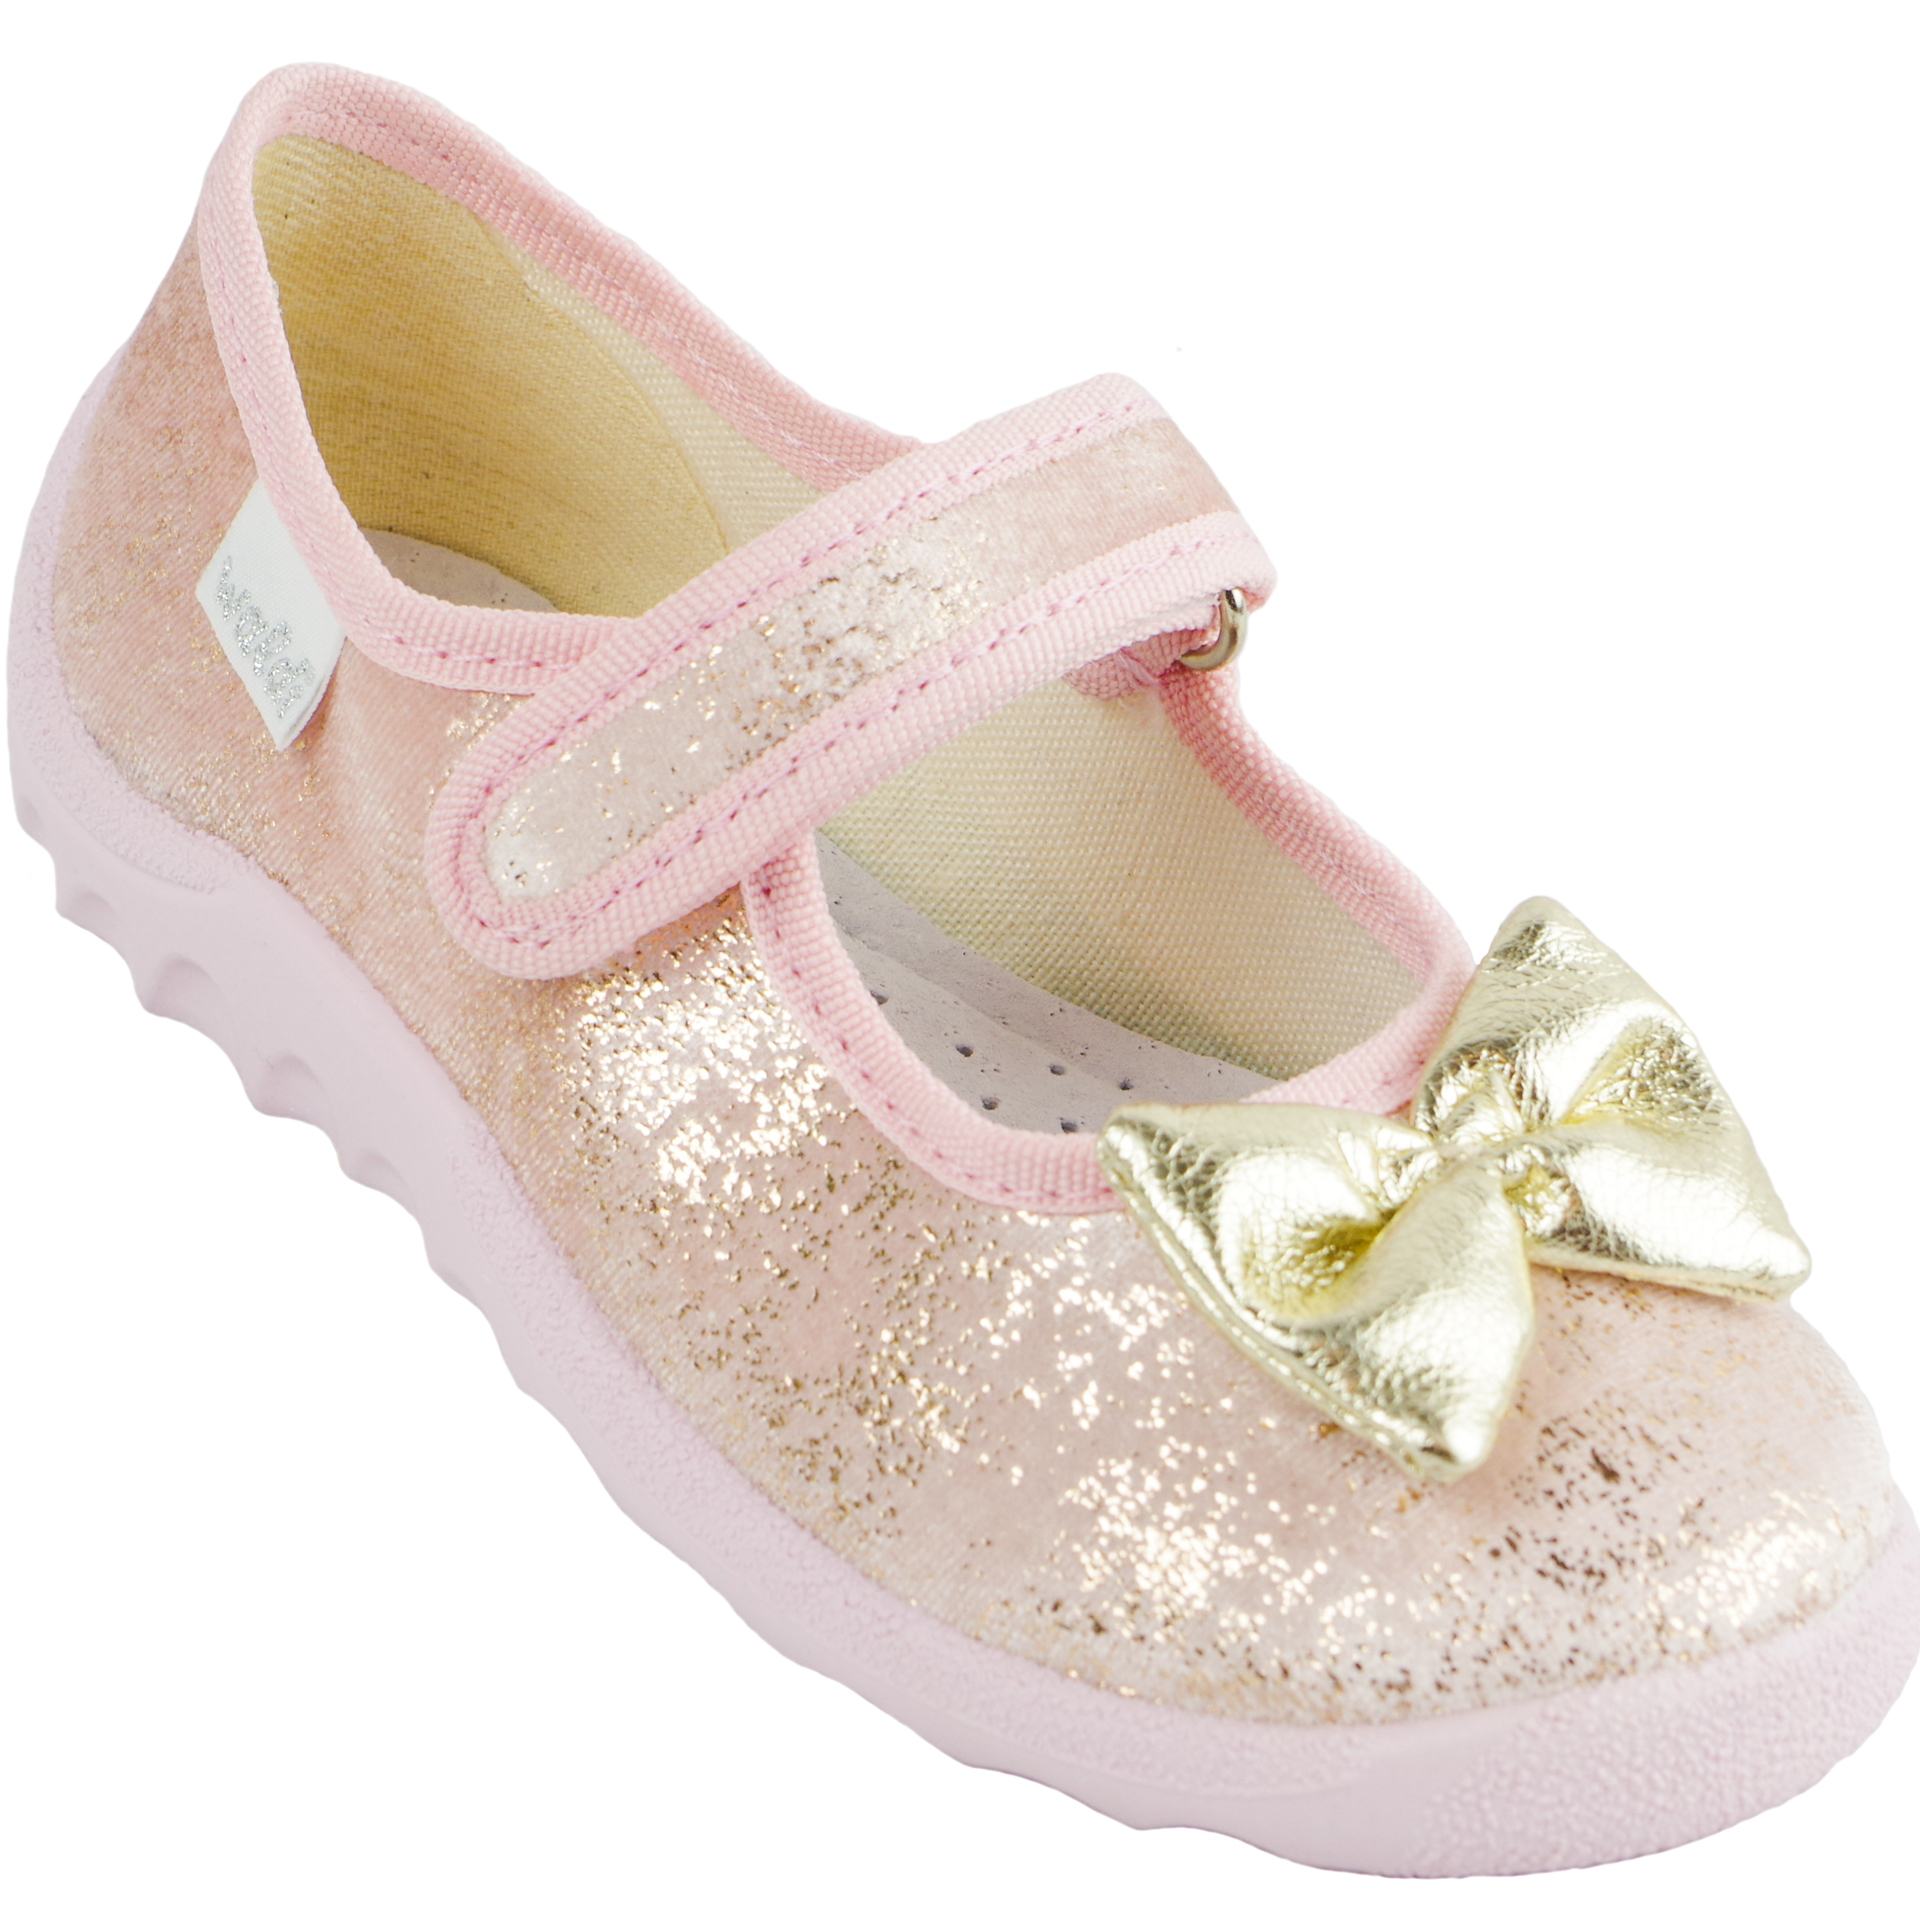 Текстильная обувь для девочек Тапочки Катя (1925) цвет Розовый 21-27 размеры – Sole Kids